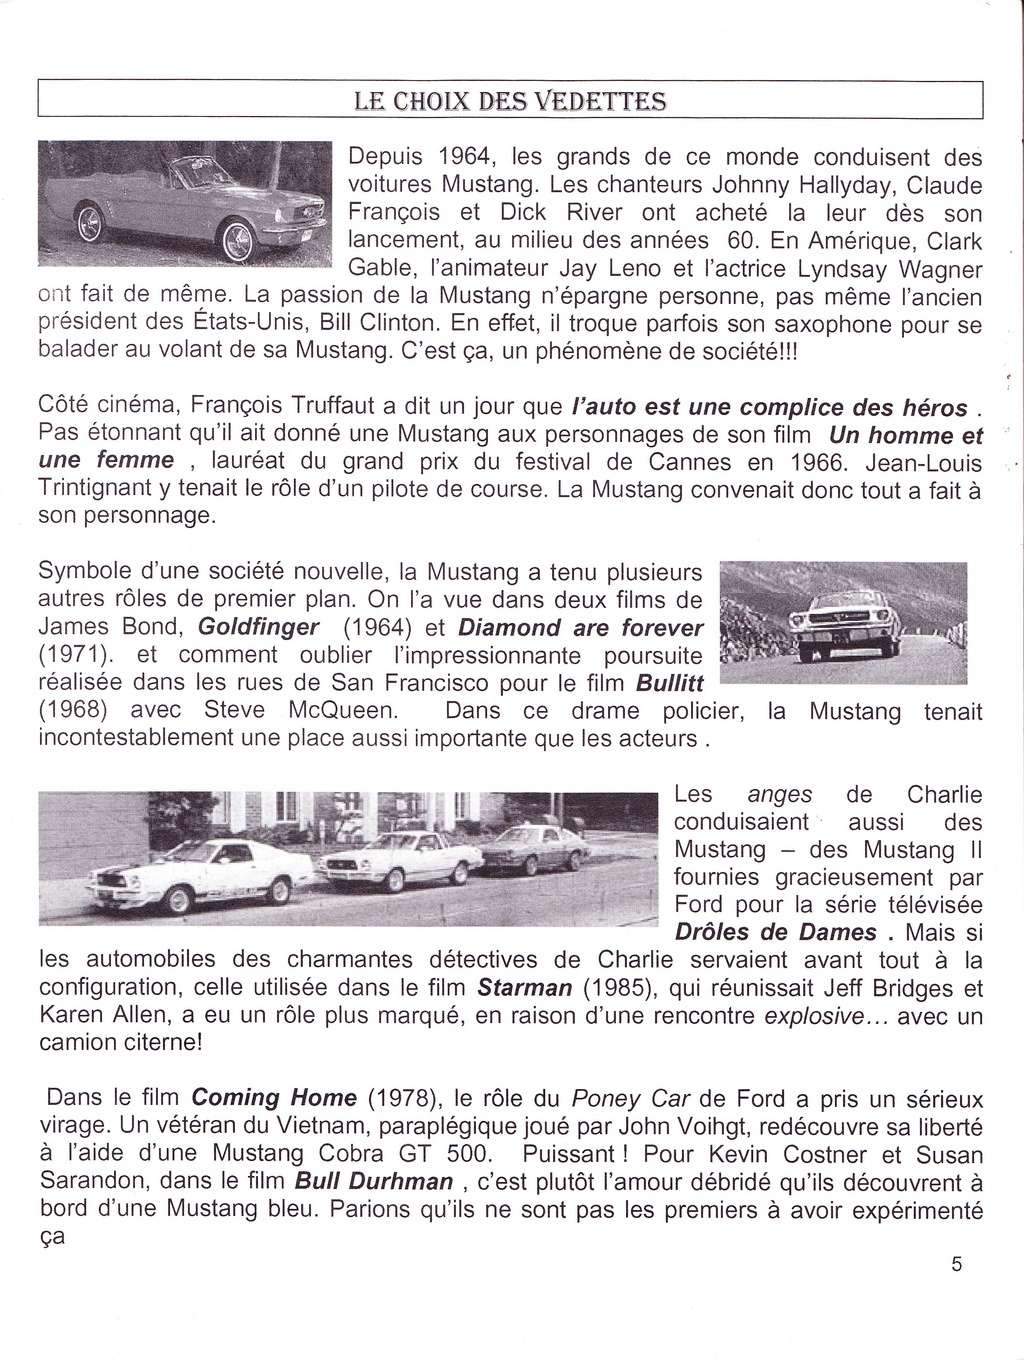 ford - Montréal Mustang: 40 ans et + d’activités! (Photos-Vidéos,etc...) - Page 15 La_lyg13